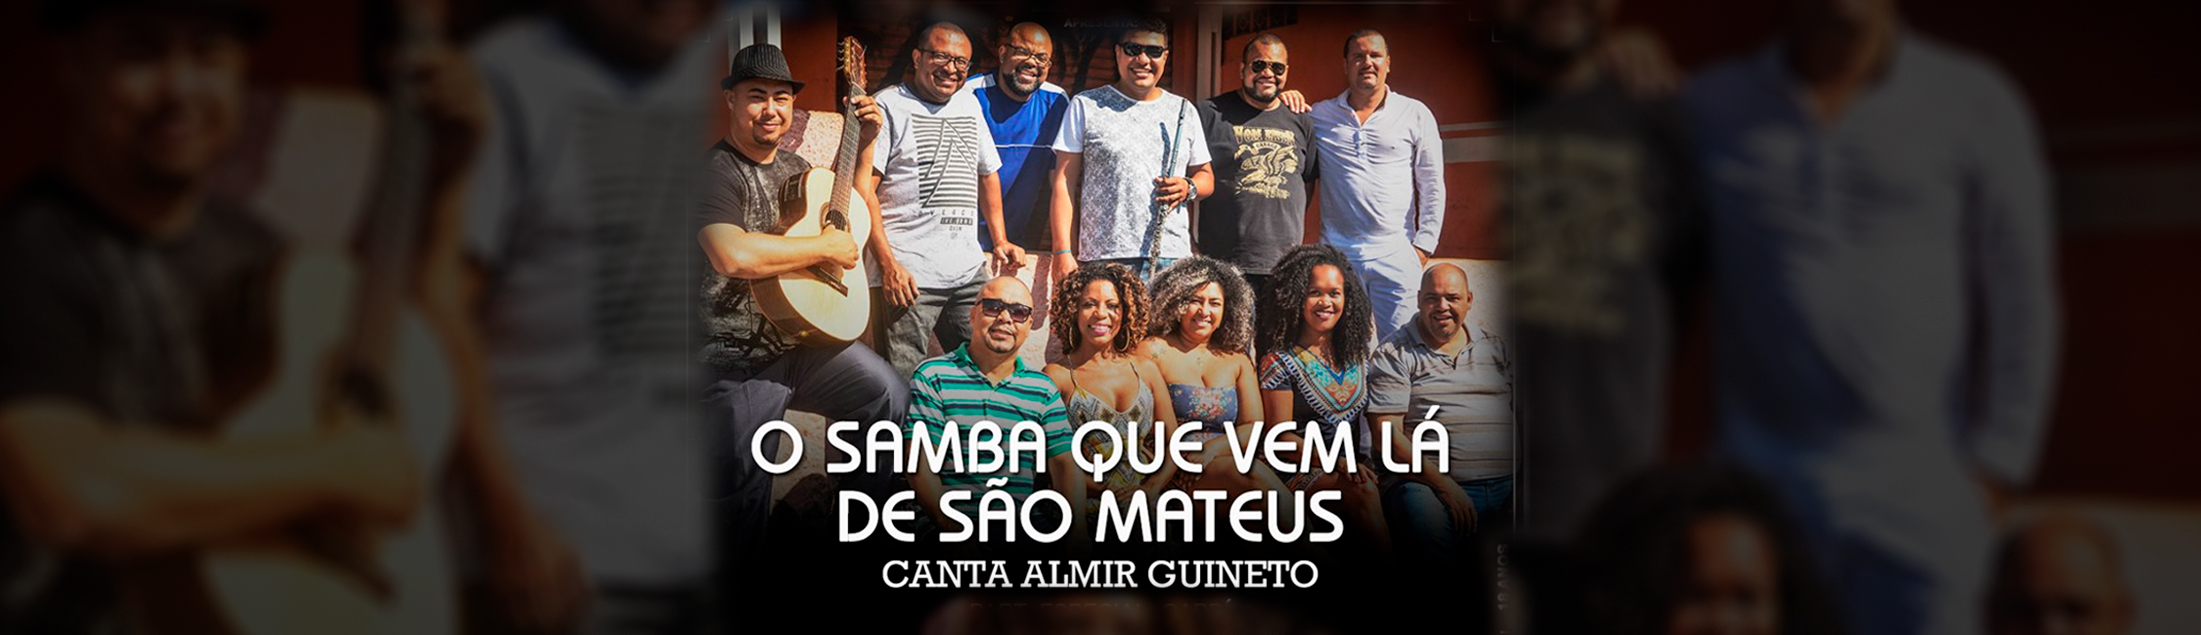 O Samba Que Vem Lá de São Mateus canta Almir Guineto no Teatro Rival